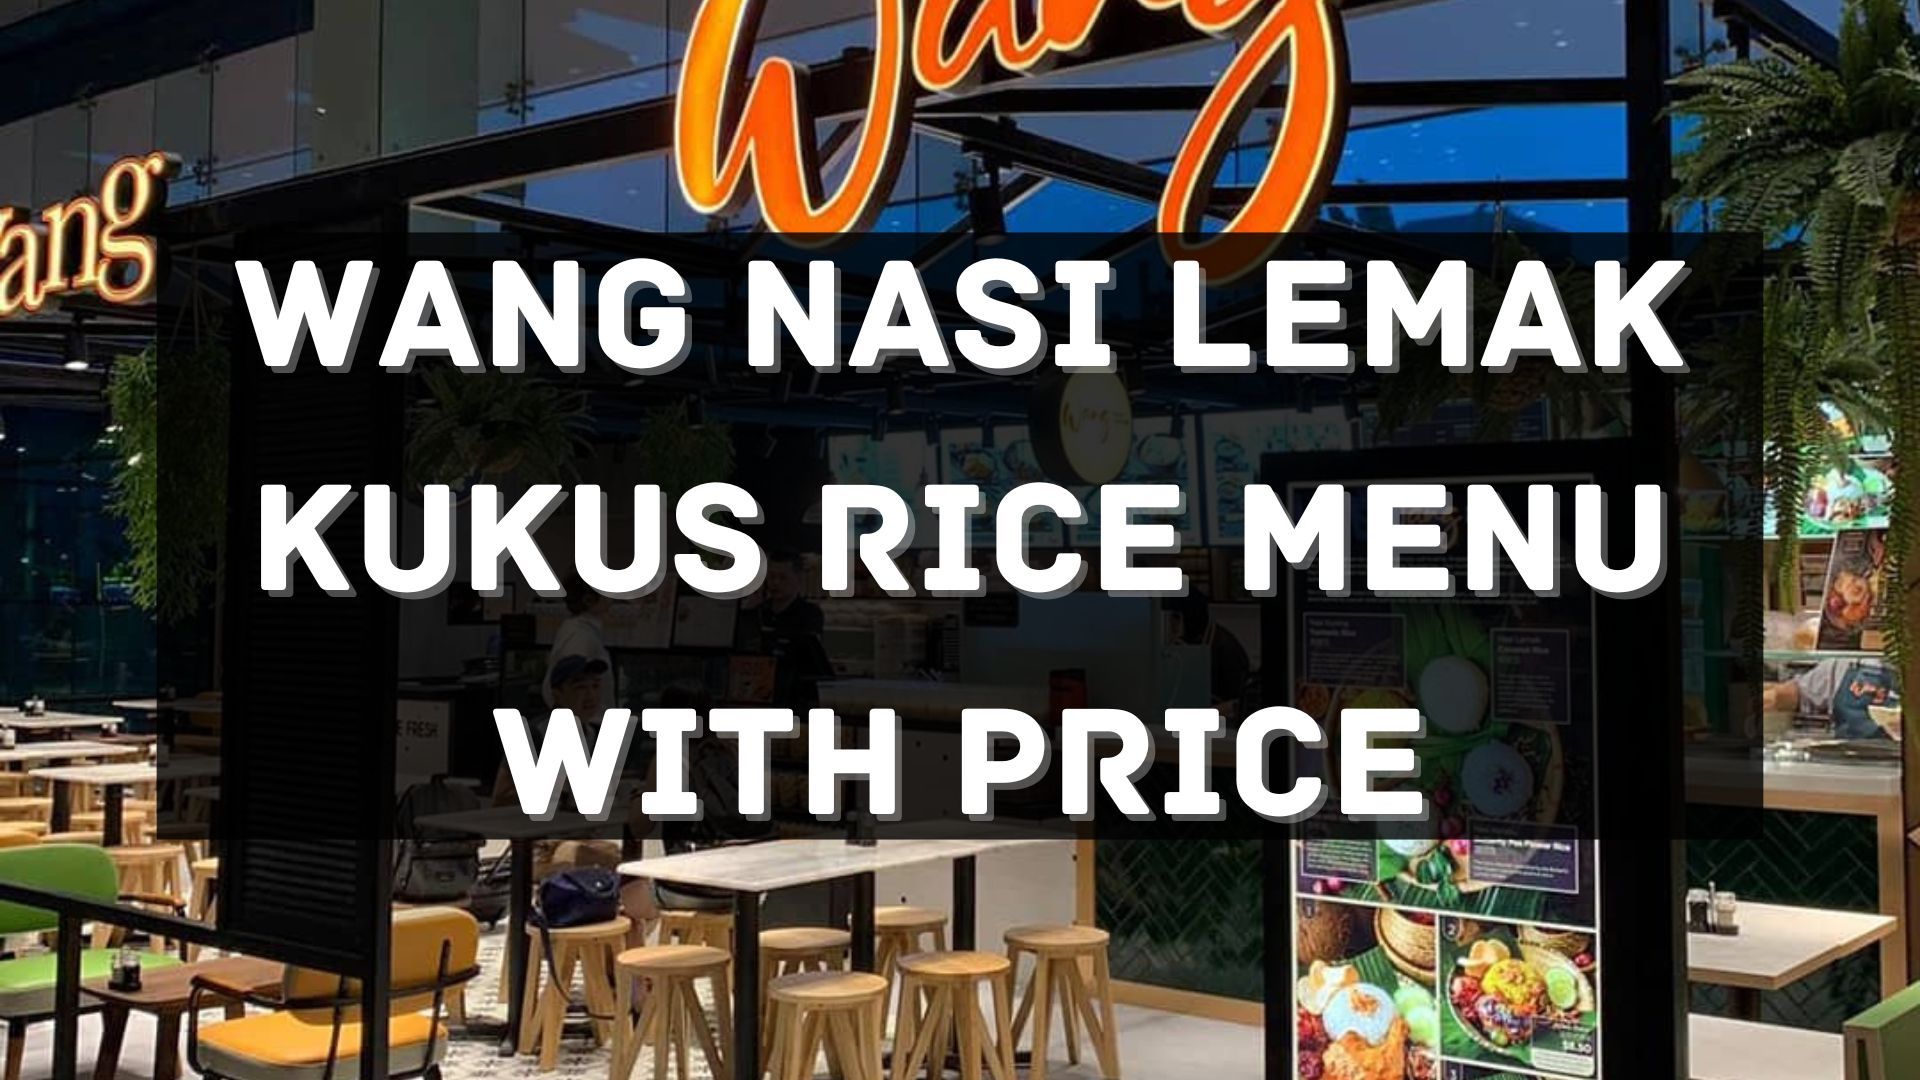 wang nasi lemak kukus menu prices singapore